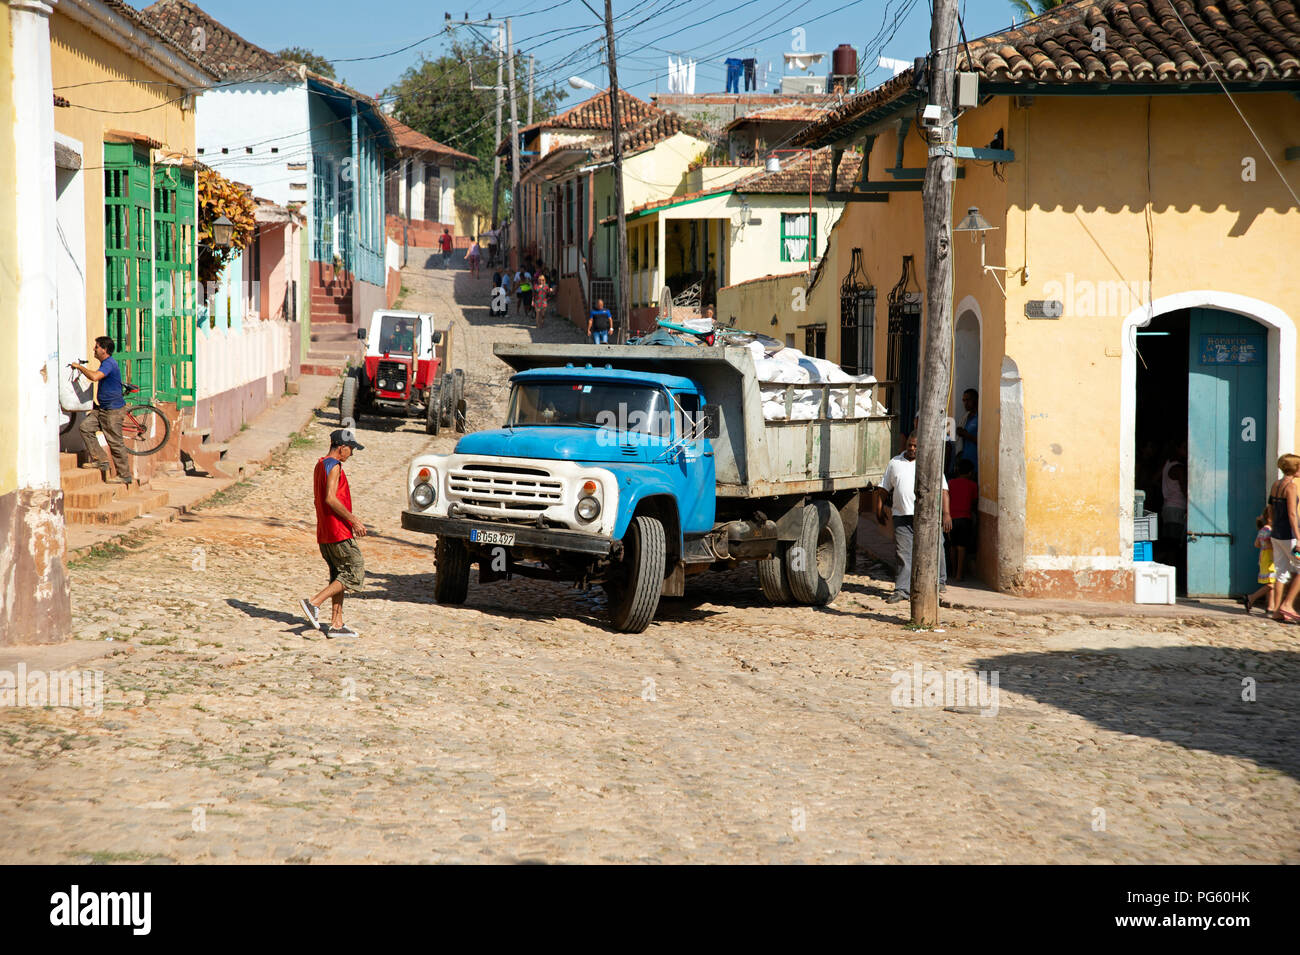 Un vieux camion beurré manœuvrant dans les ruelles de Trinidad Cuba Banque D'Images